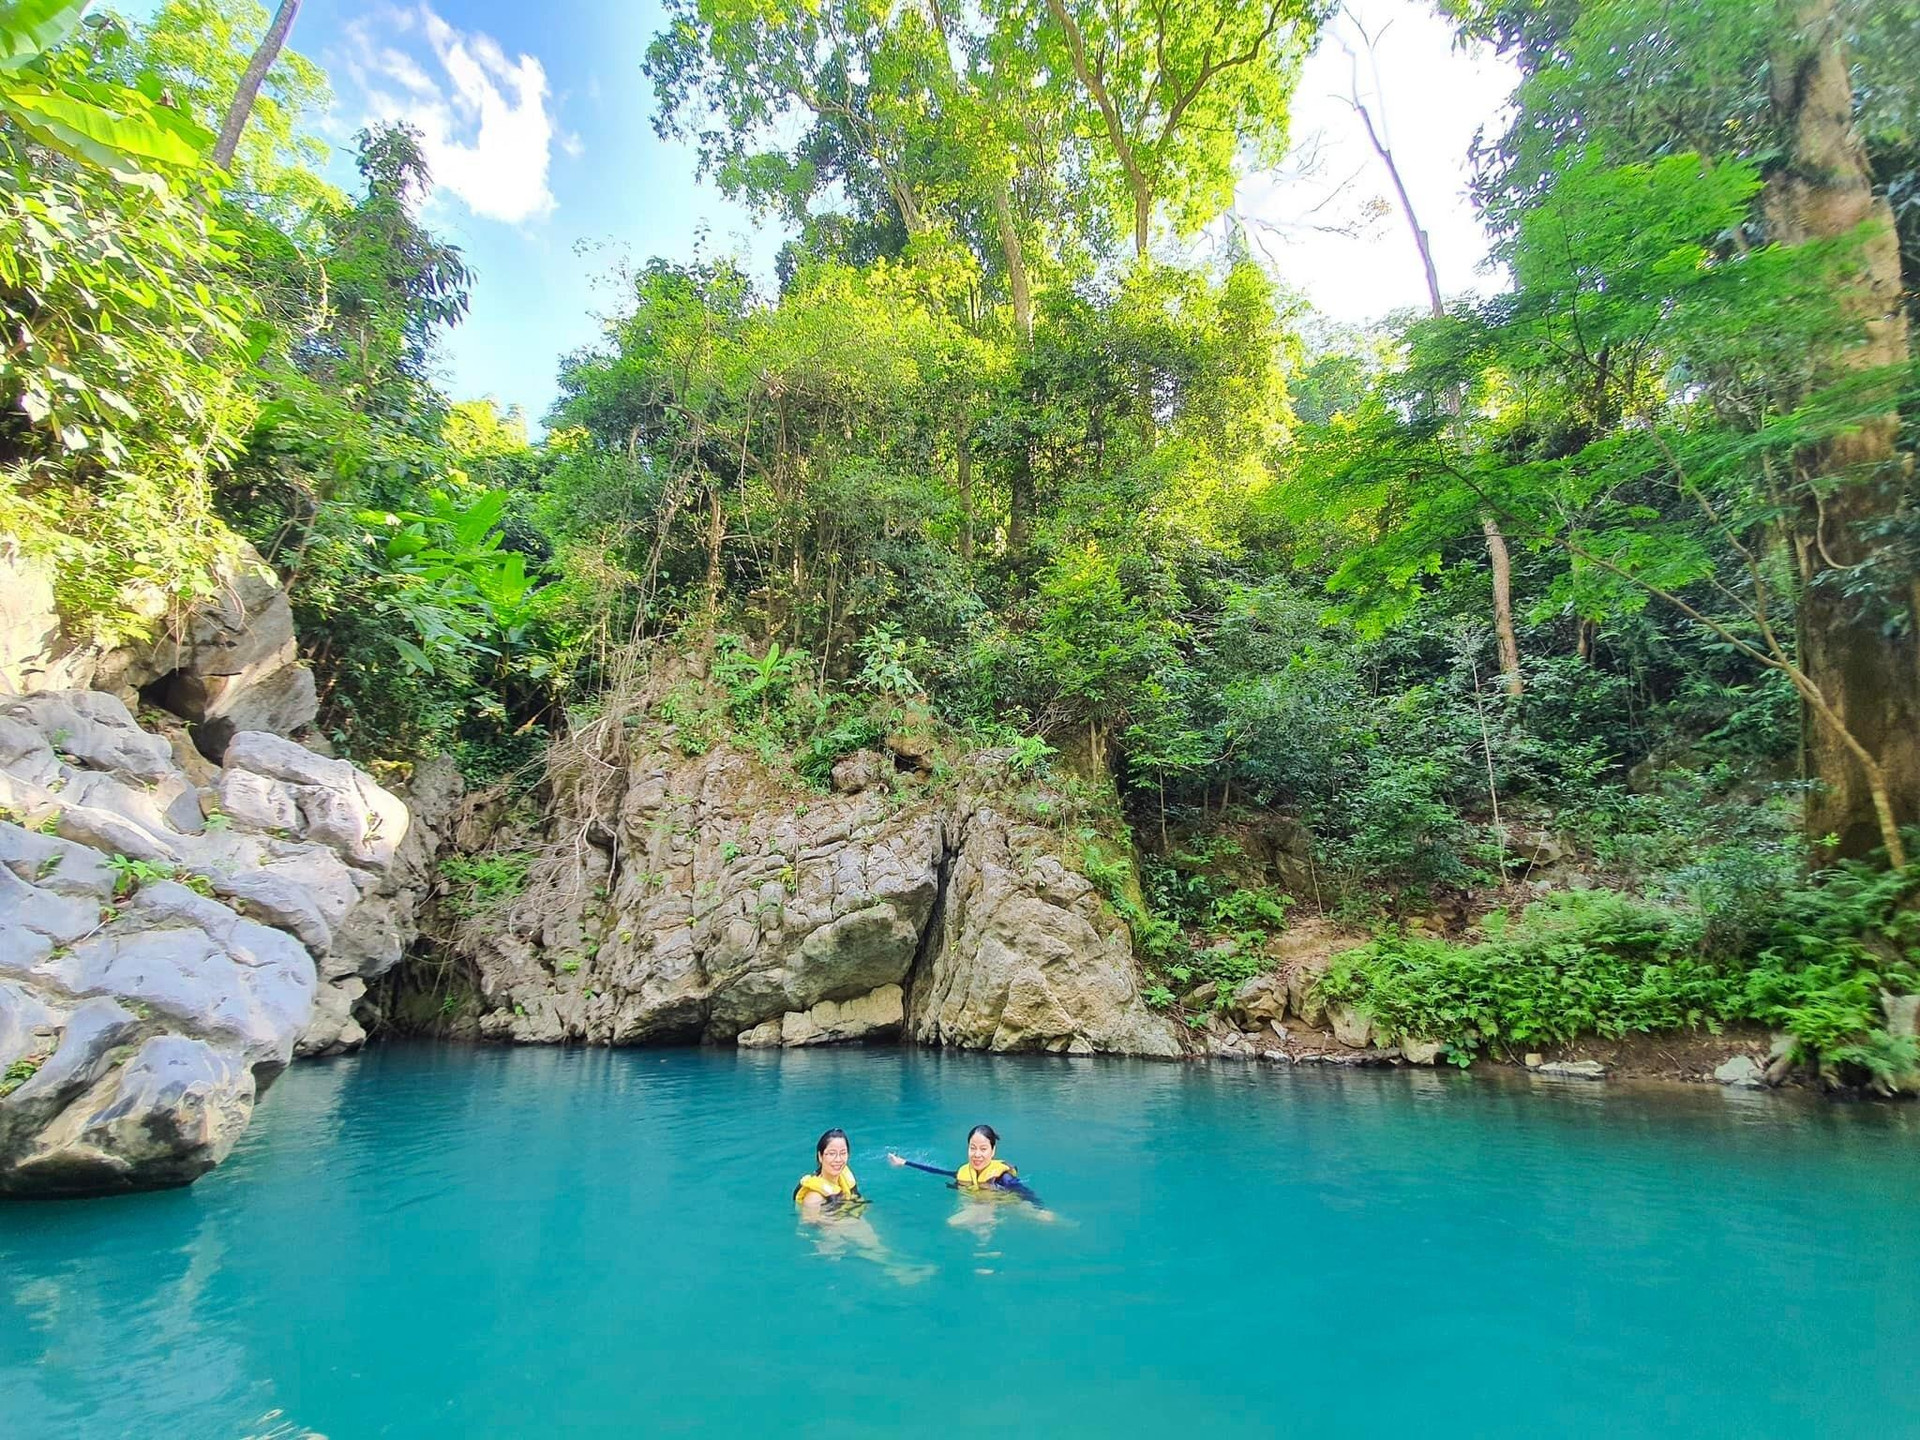 Hồ nước xanh màu ngọc bích đẹp như tiên cảnh ẩn giữa Di sản thế giới ở Việt Nam - 7